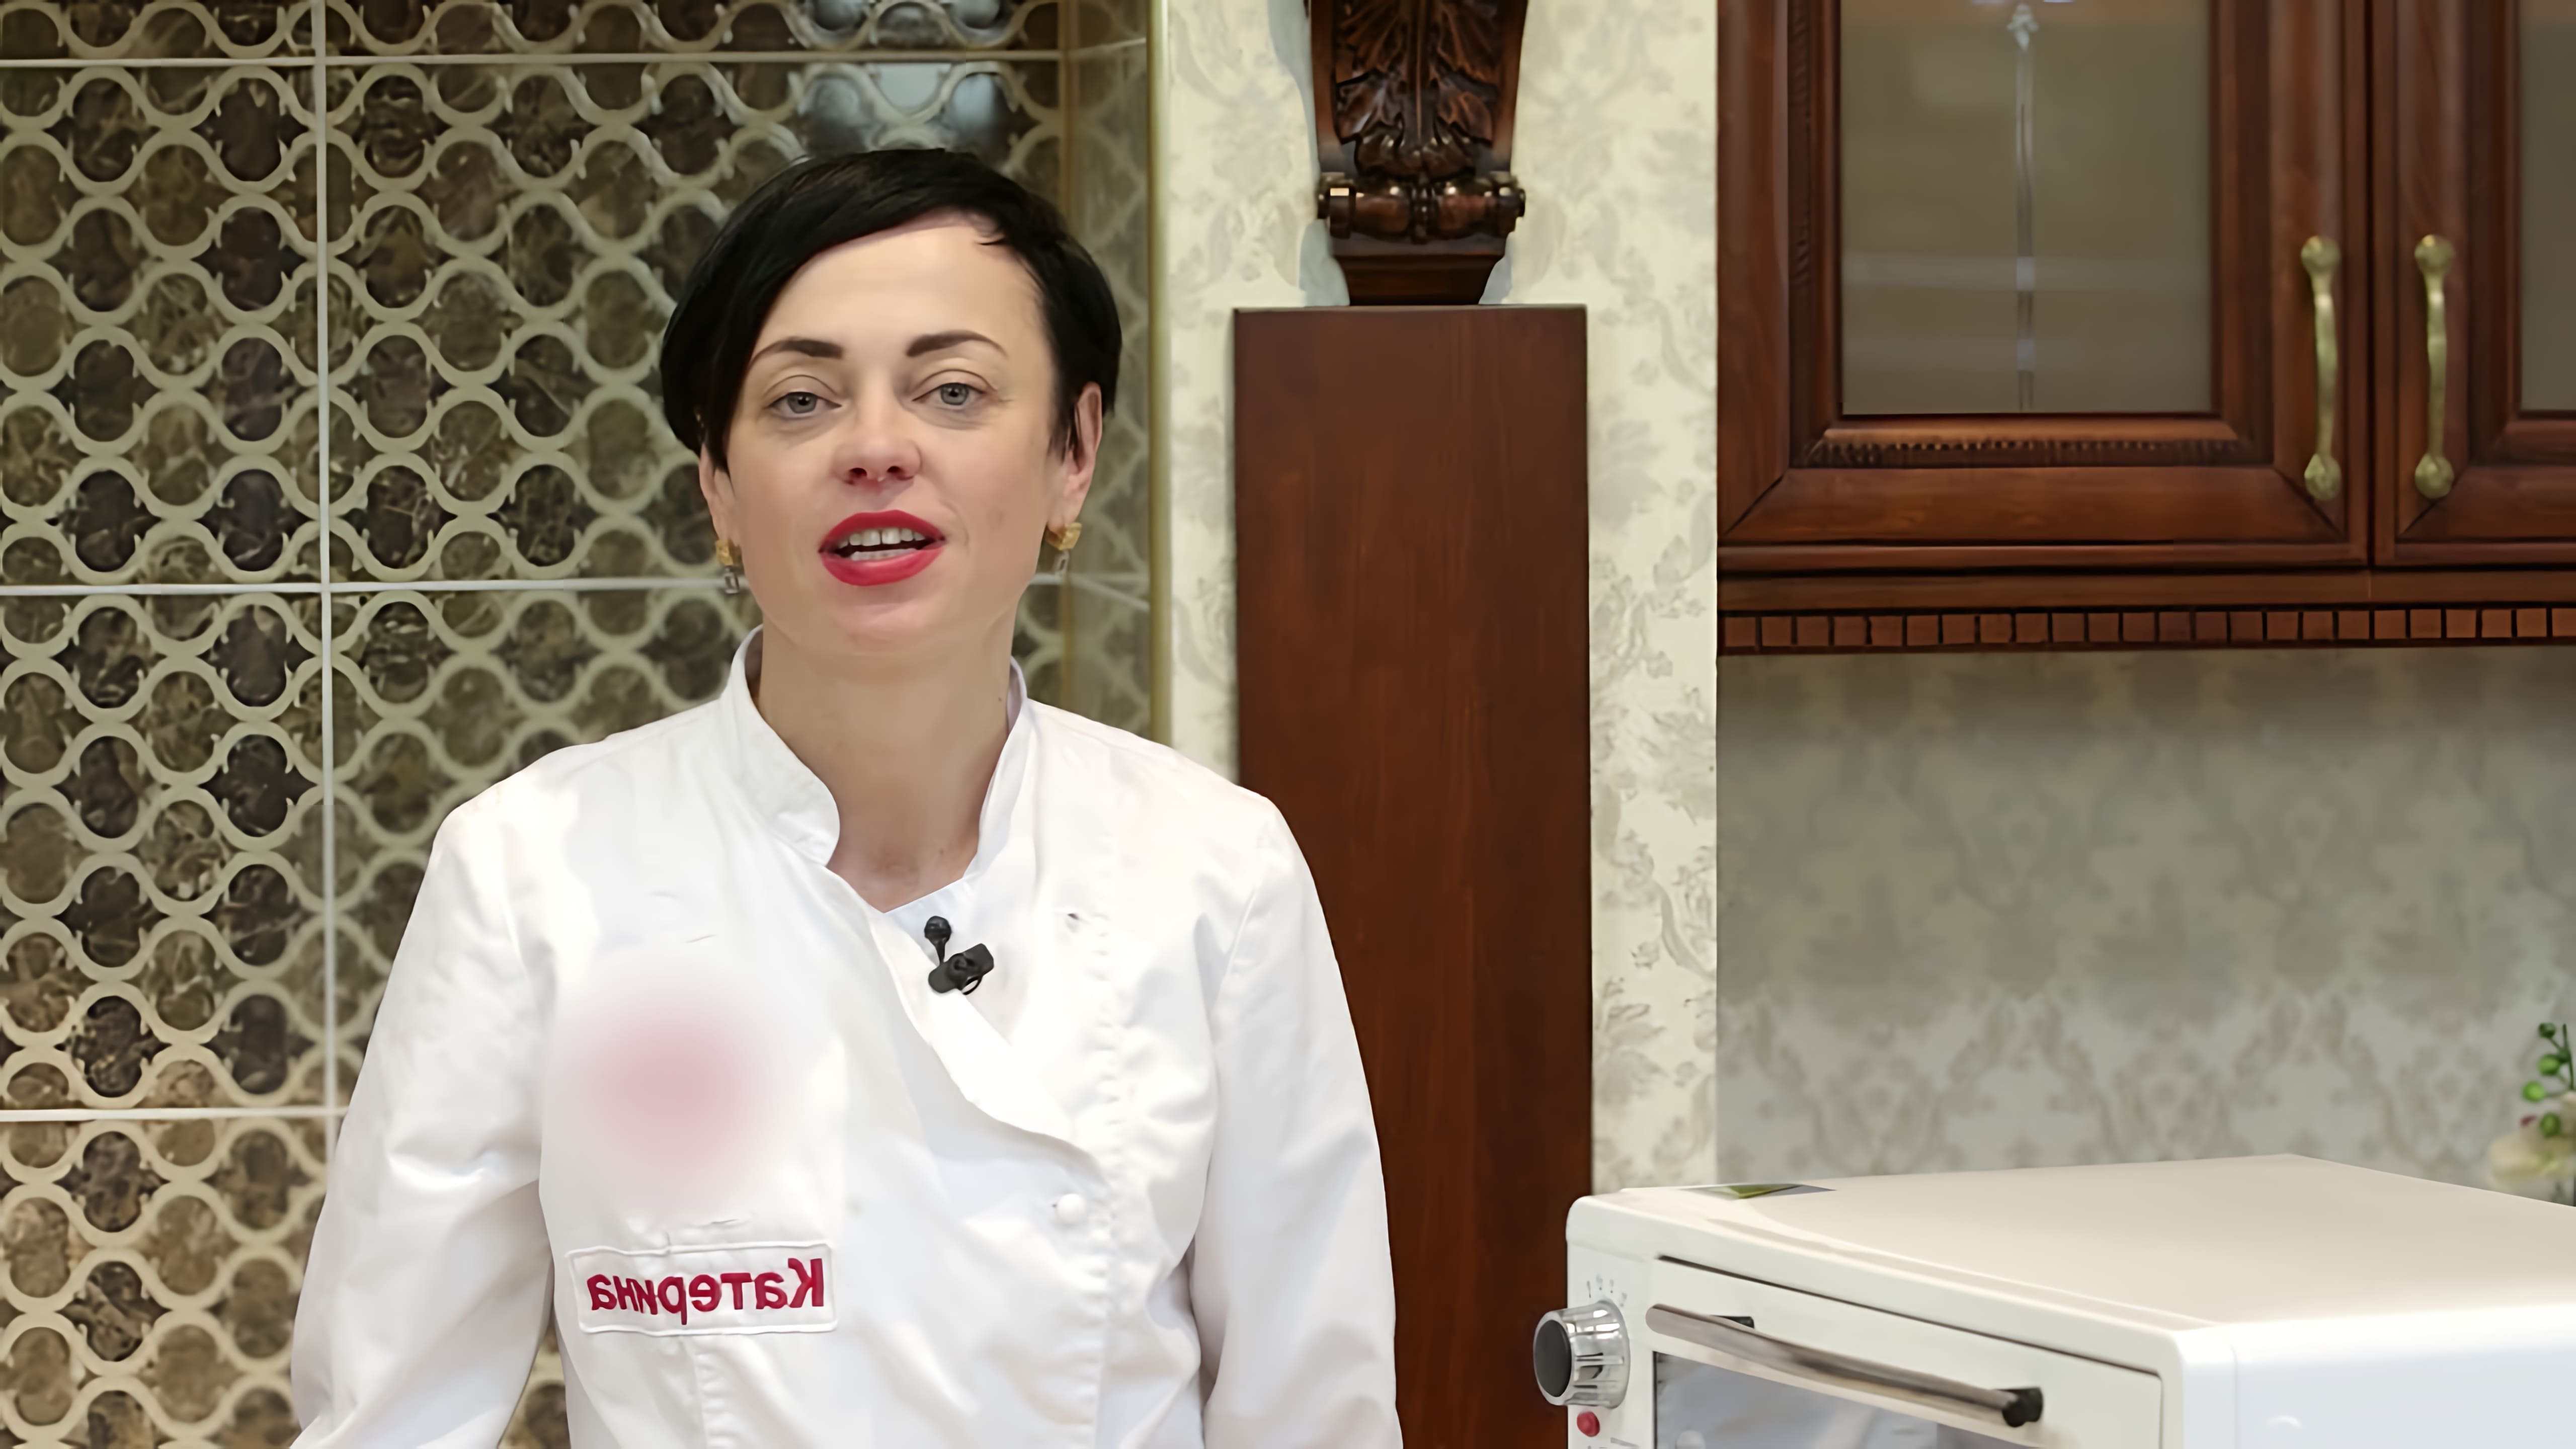 В этом видео демонстрируется процесс приготовления итальянского печенья бискотти